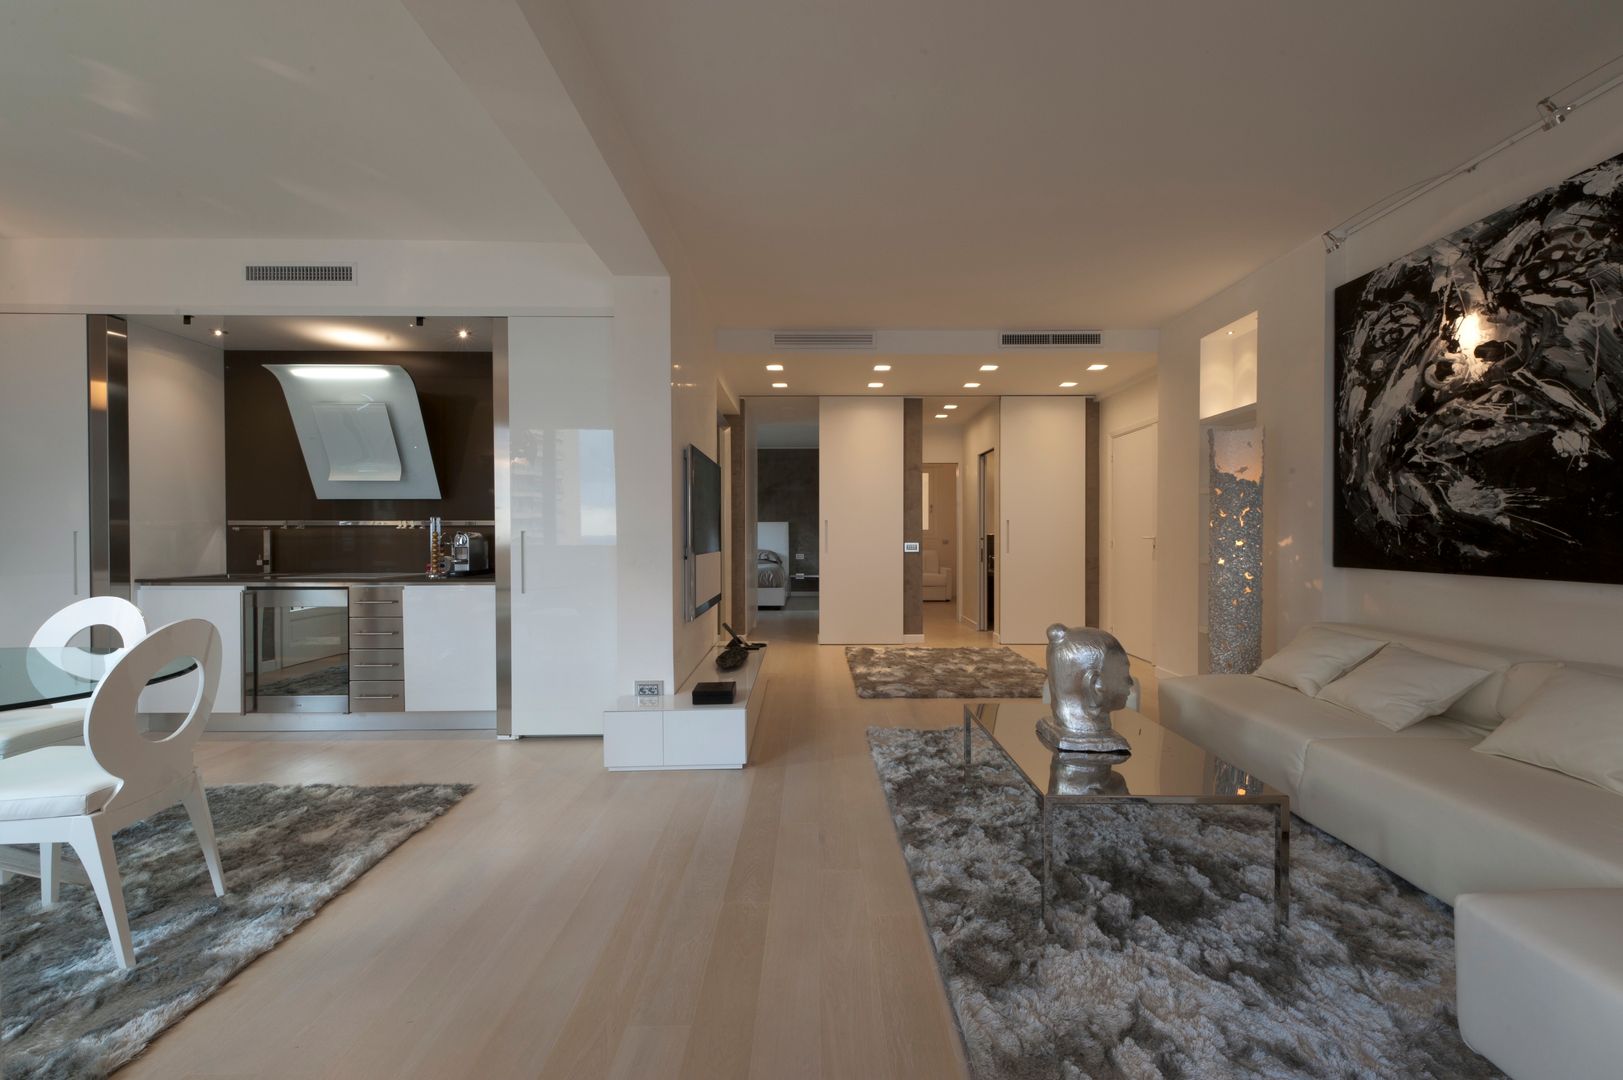 Maison Slim (Montecarlo), studiodonizelli studiodonizelli Salas de estar modernas